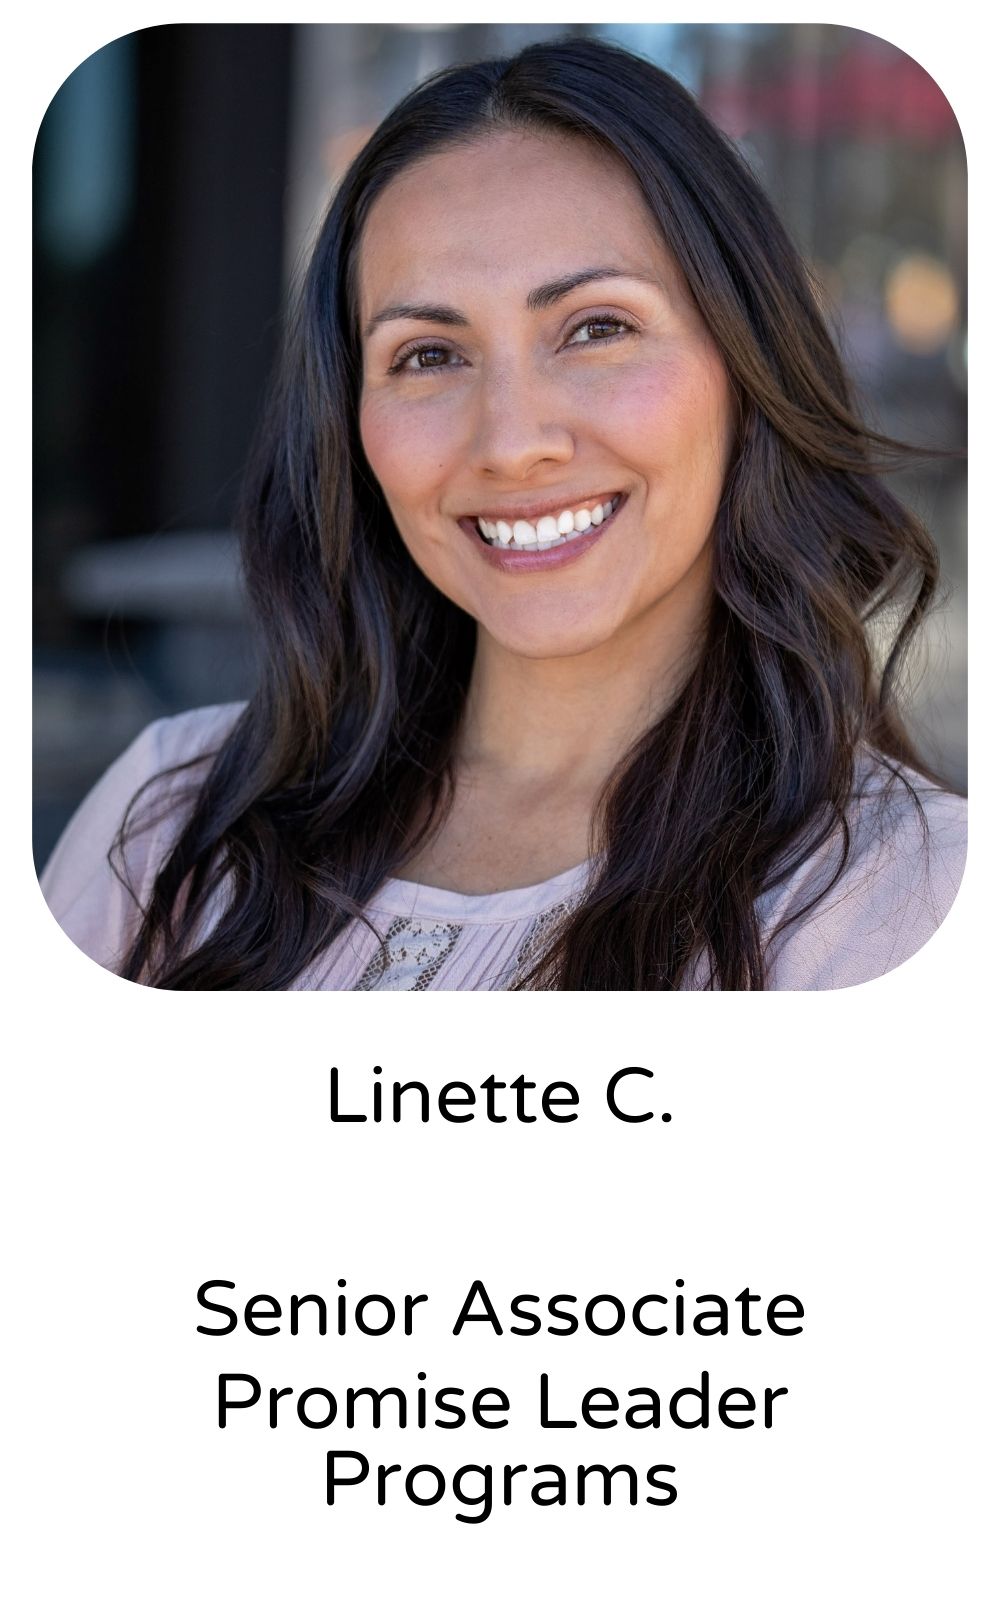 Linette C, Senior Associate, Promise Leader Programs